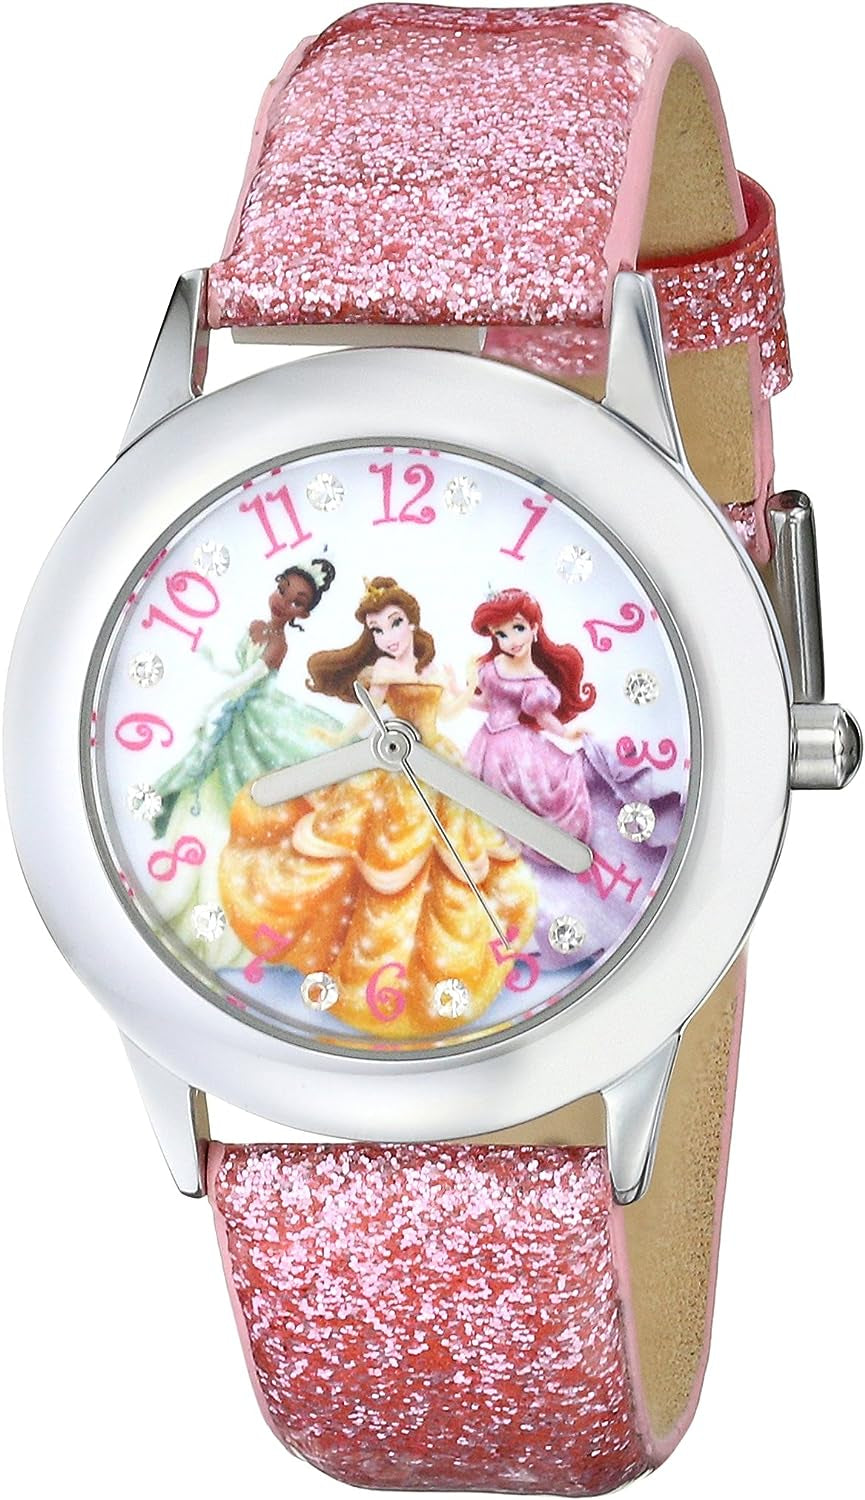 Princess Tween Stainless Steel Analog Quartz Watch, Pink, Children'S Watches